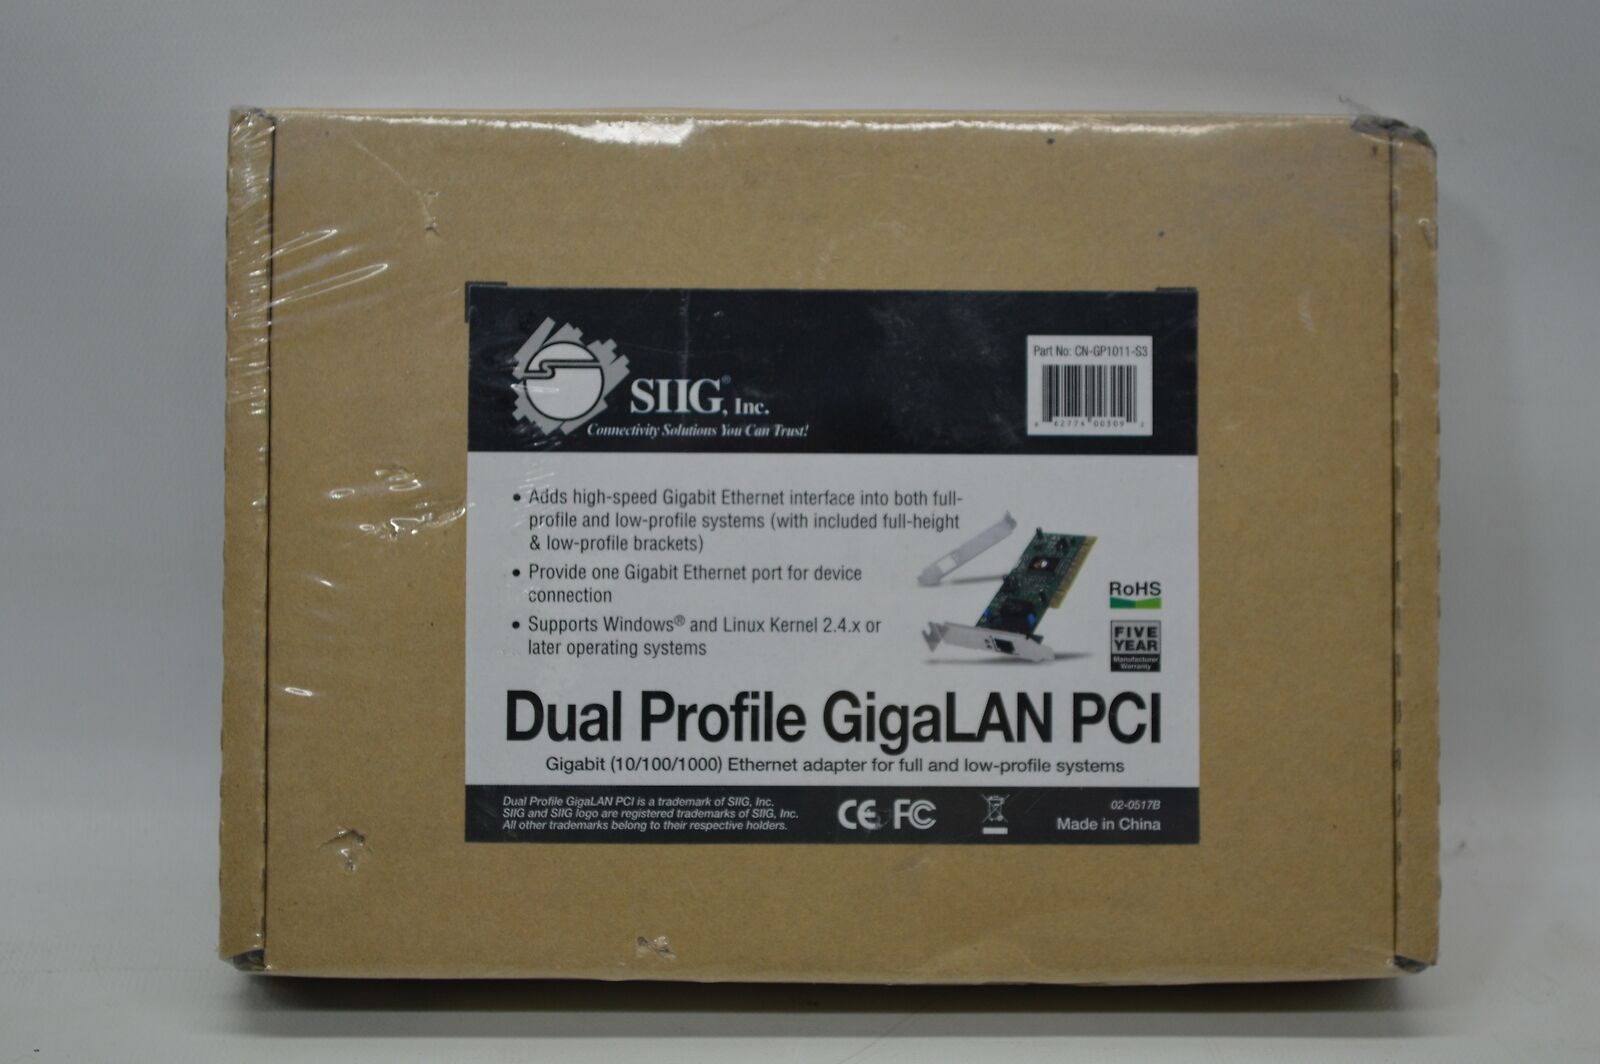 SIIG CN-GP1011-S3 Dual Profile GigaLAN PCI *New Unused*